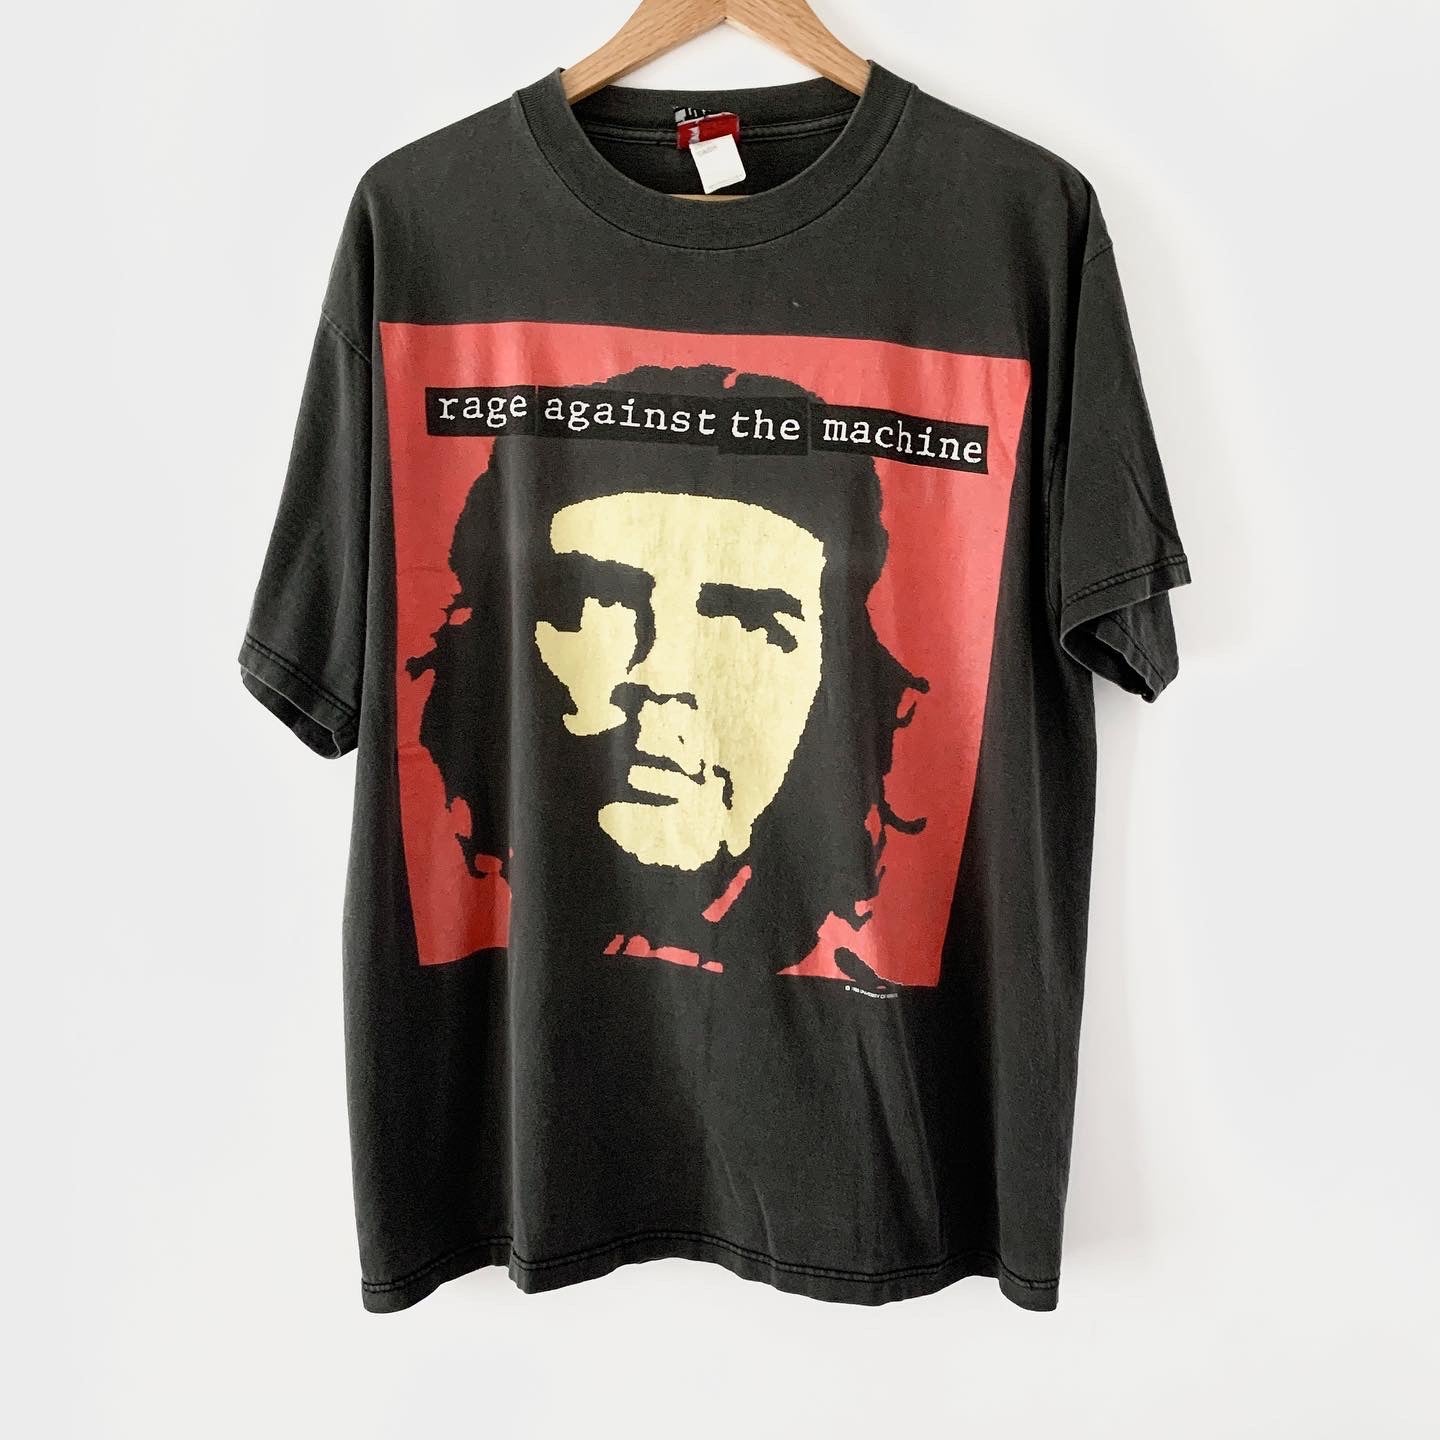 Che Guevara – Tees Geek